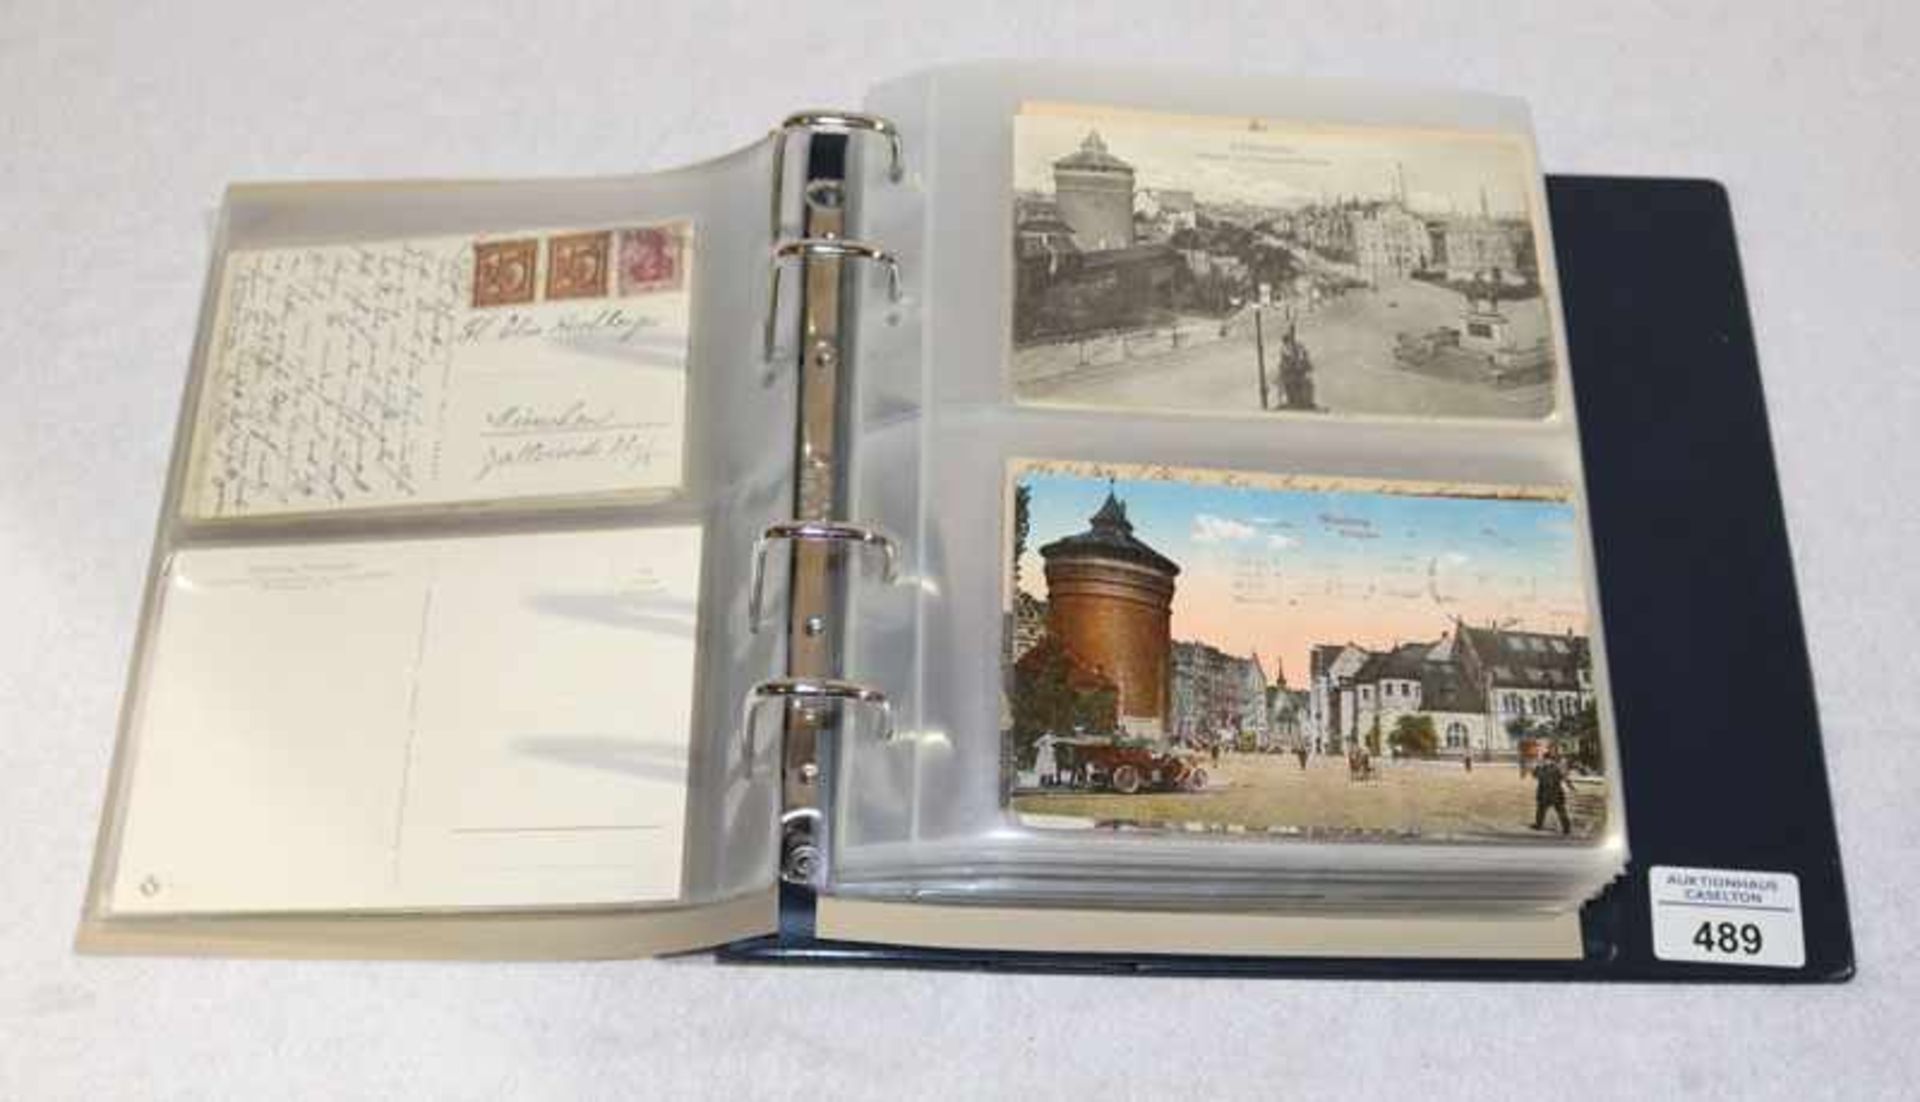 Postkarten Album mit diversen Postkarten von Nürnberg, 20. Jahrhundert